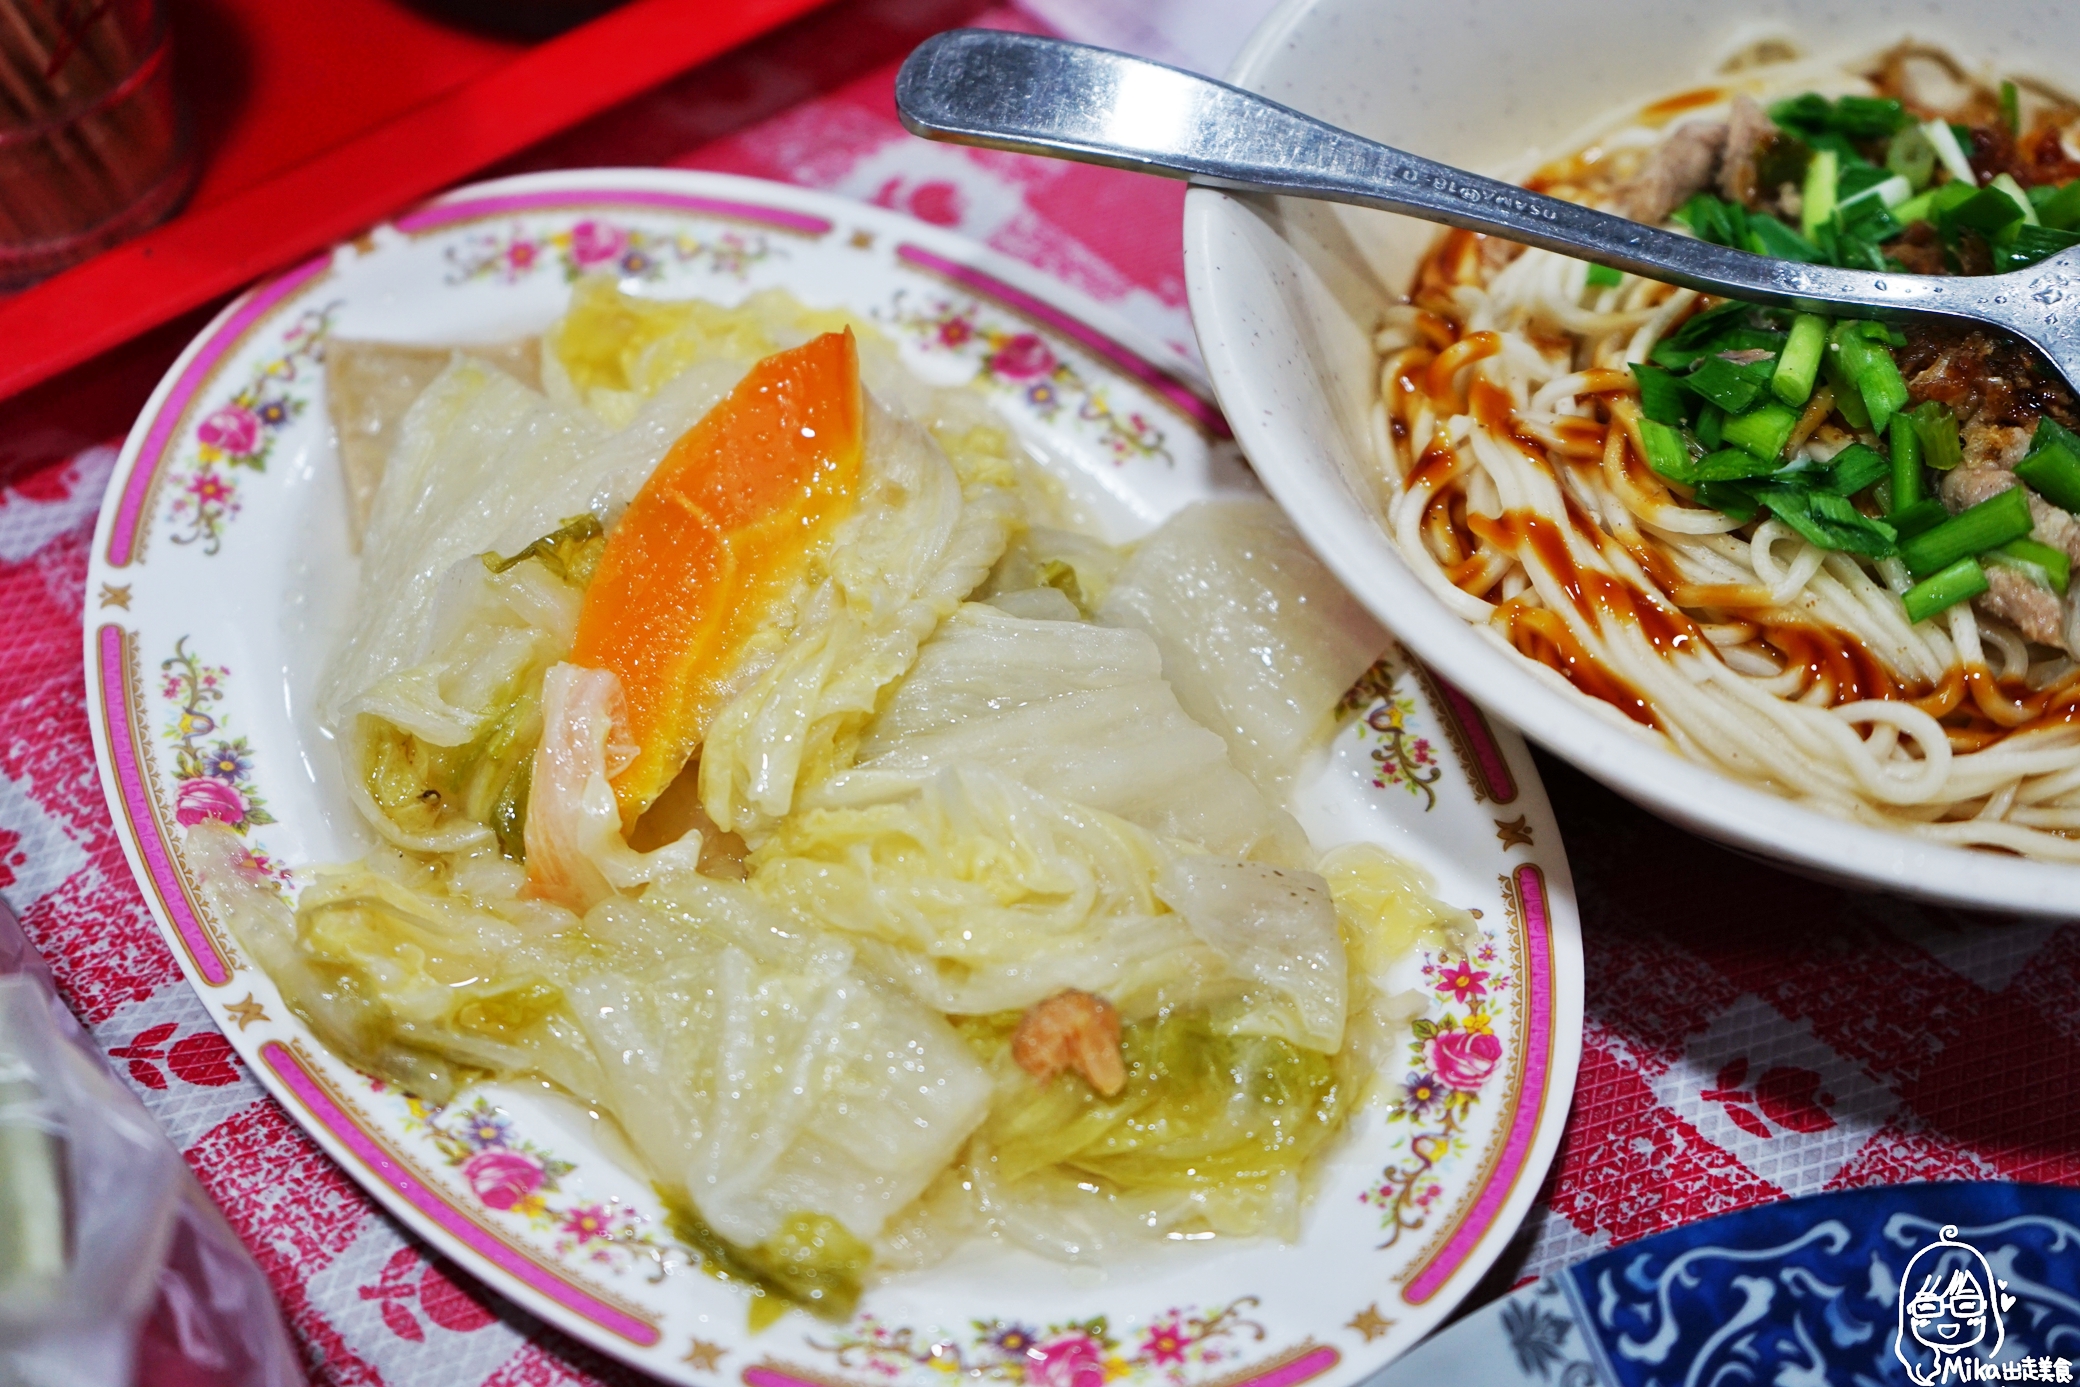 『桃園。龍潭』 三坑老街  阿琴小吃｜傳統客家料理  鹹湯圓、板條、滷味還有隱藏版炸物。